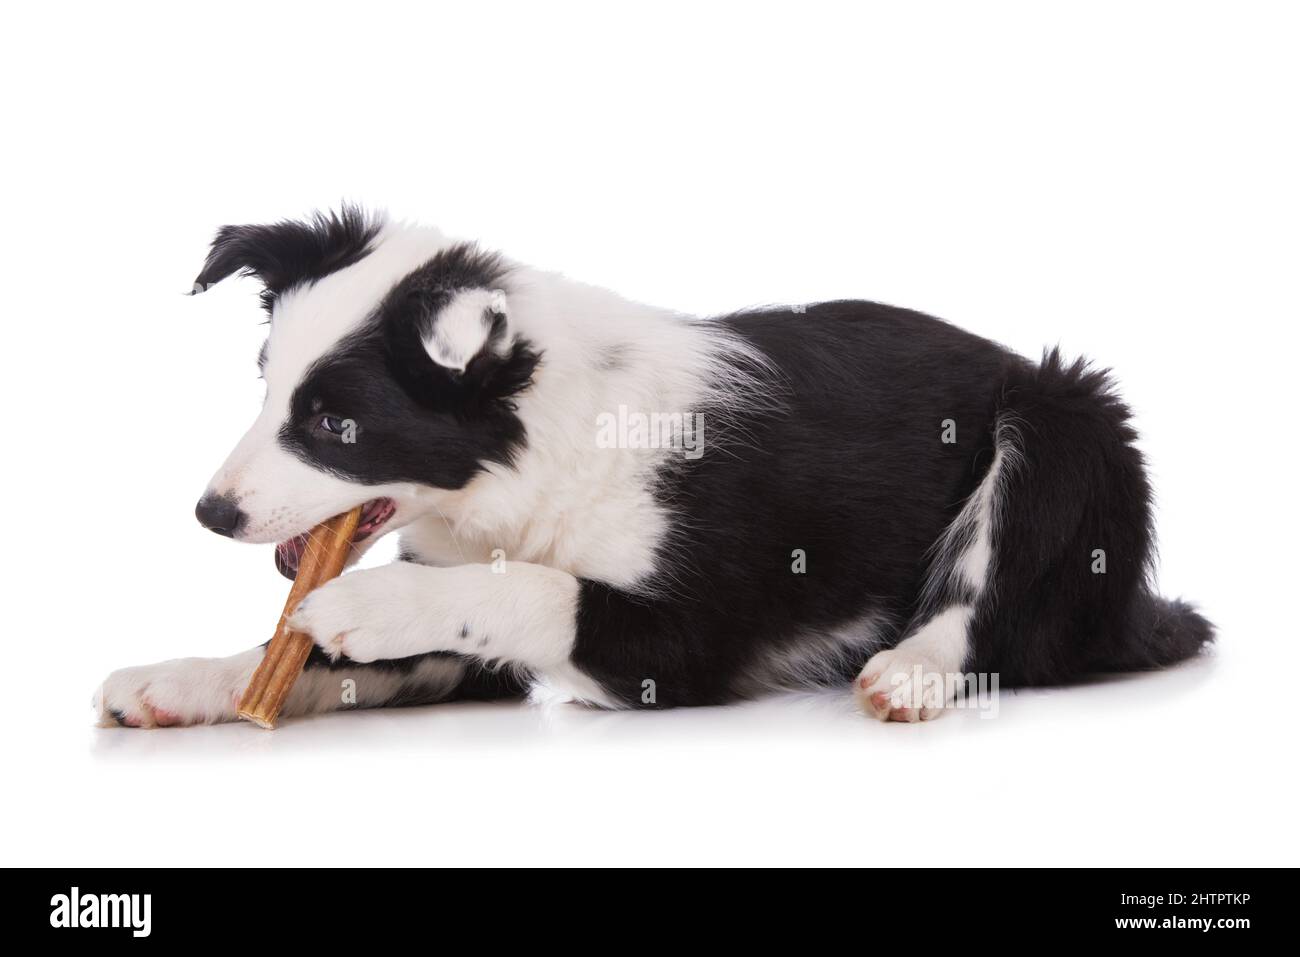 Border Collie Dog with Bone Stock Photo - Image of bone, lying: 51253044